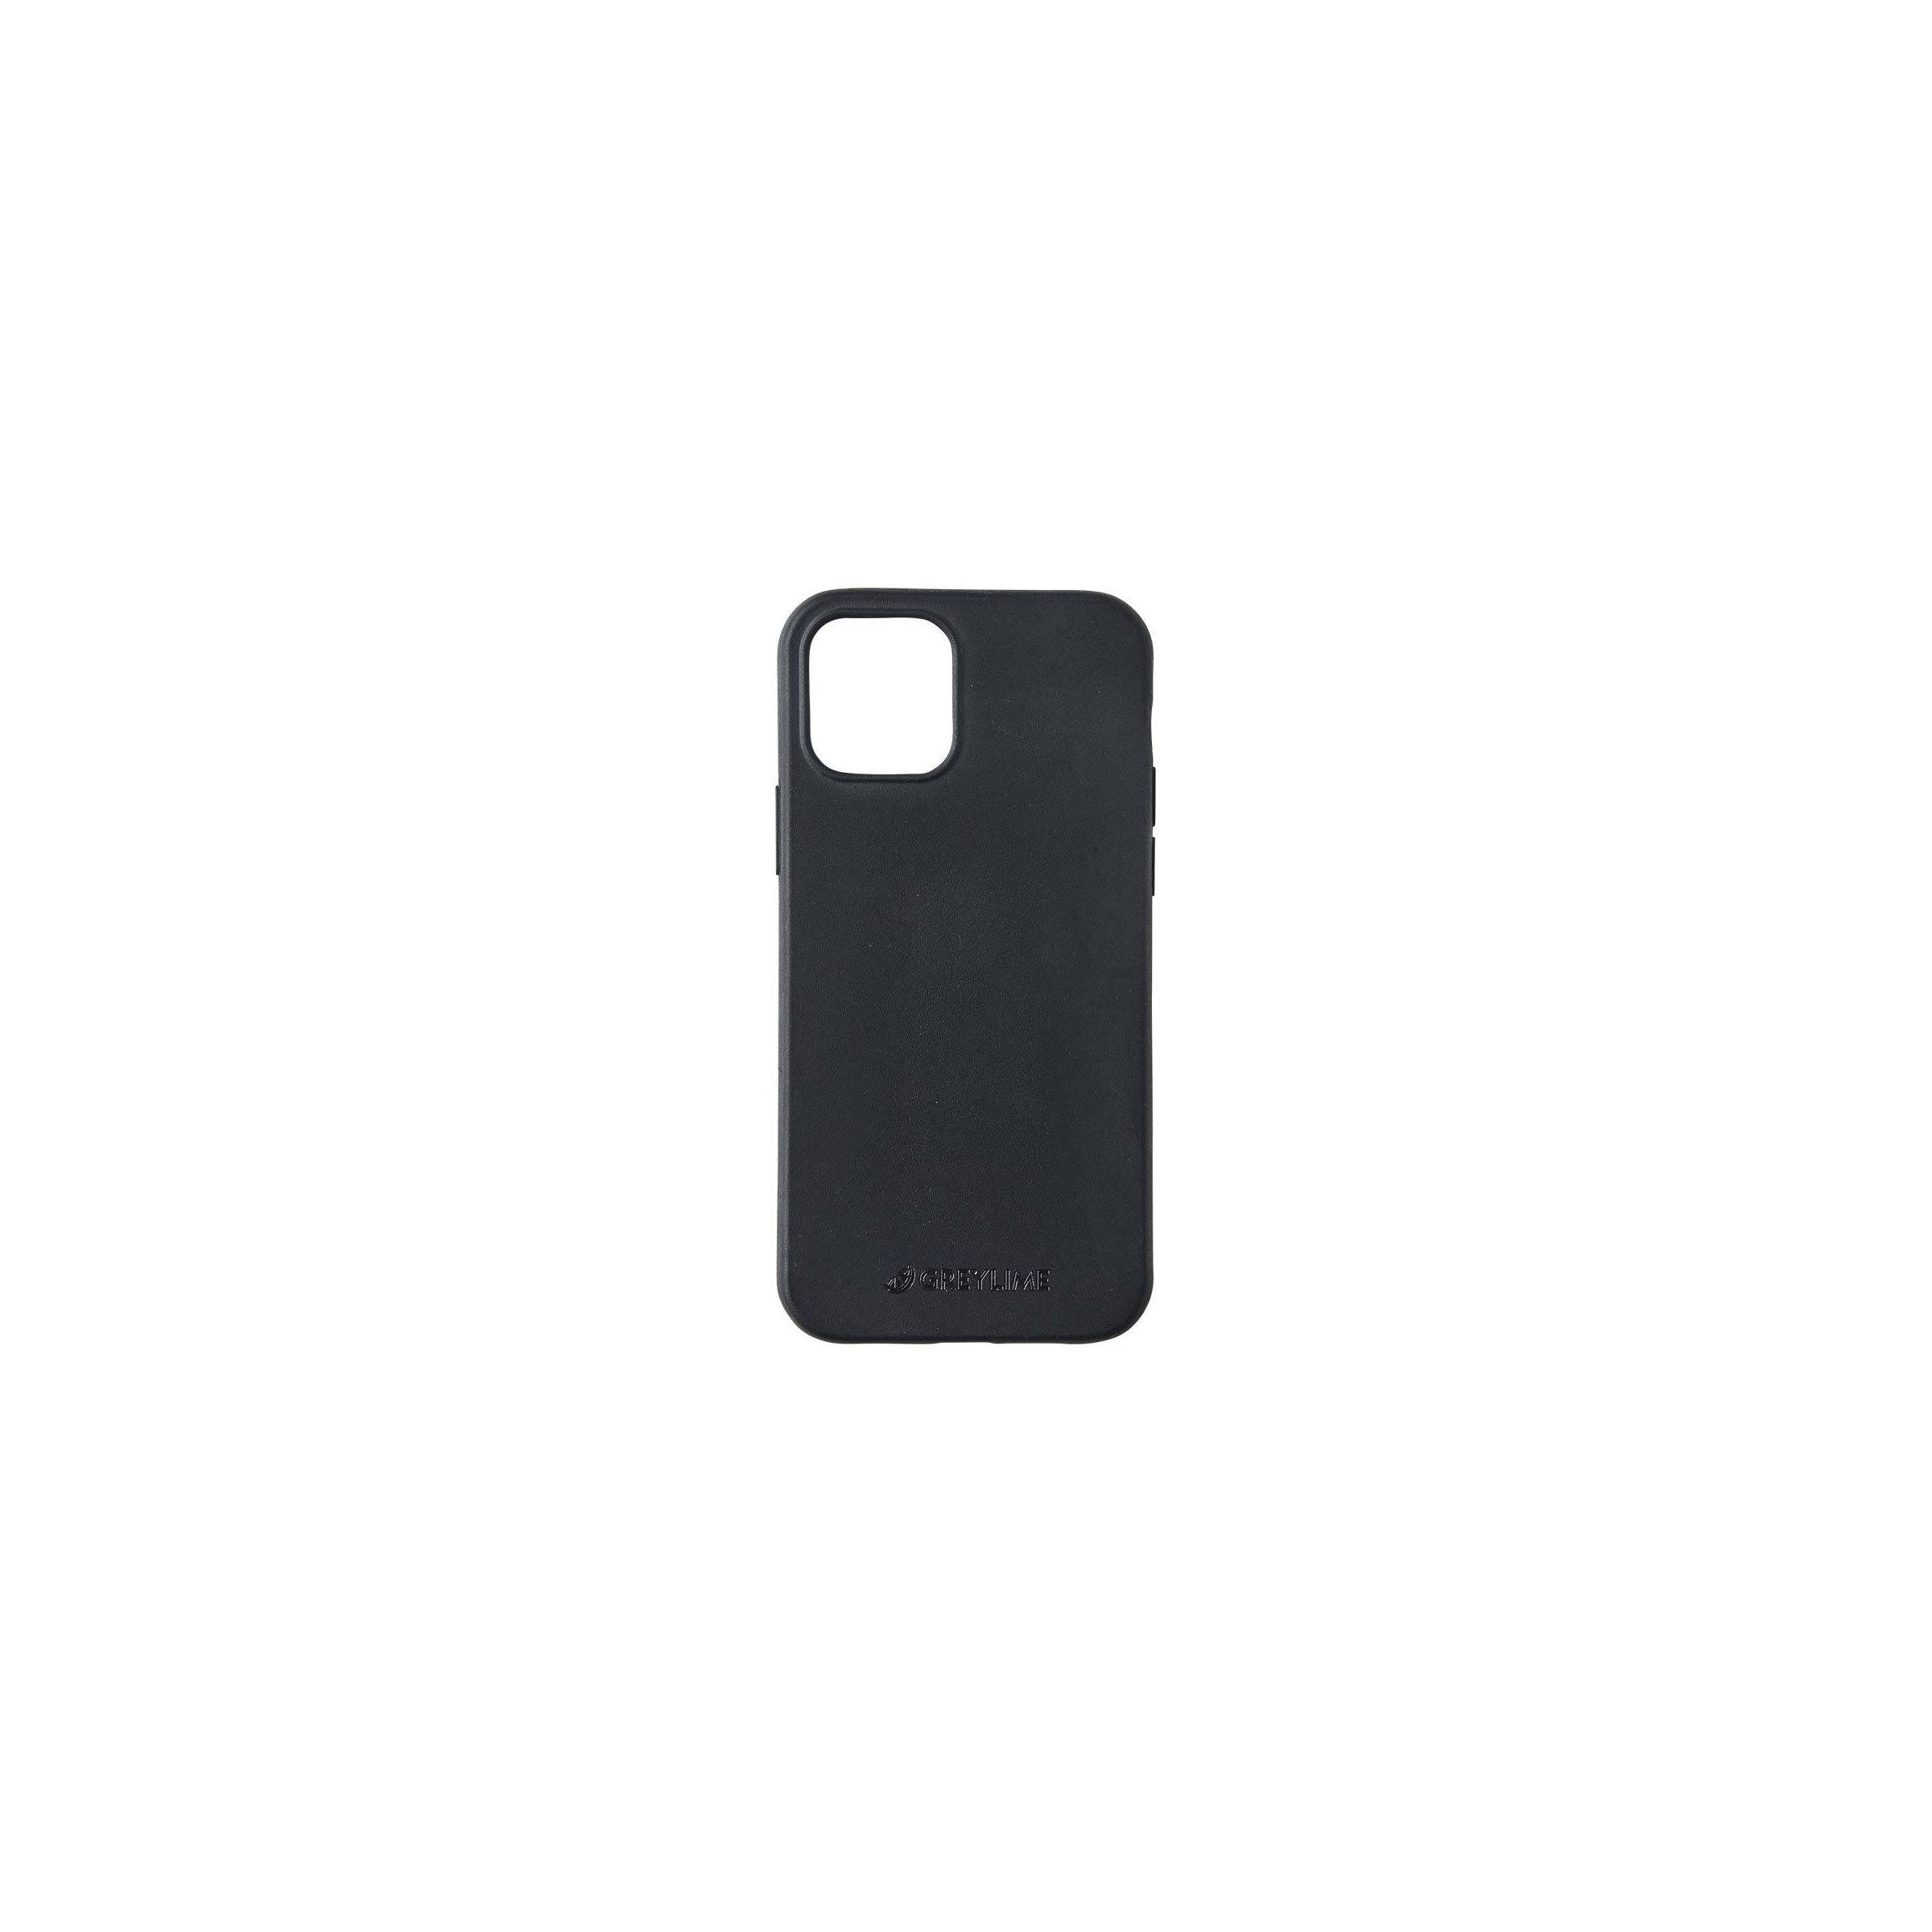 Bilde av Greylime Iphone 12/12 Pro Biodegradable Cover, Black